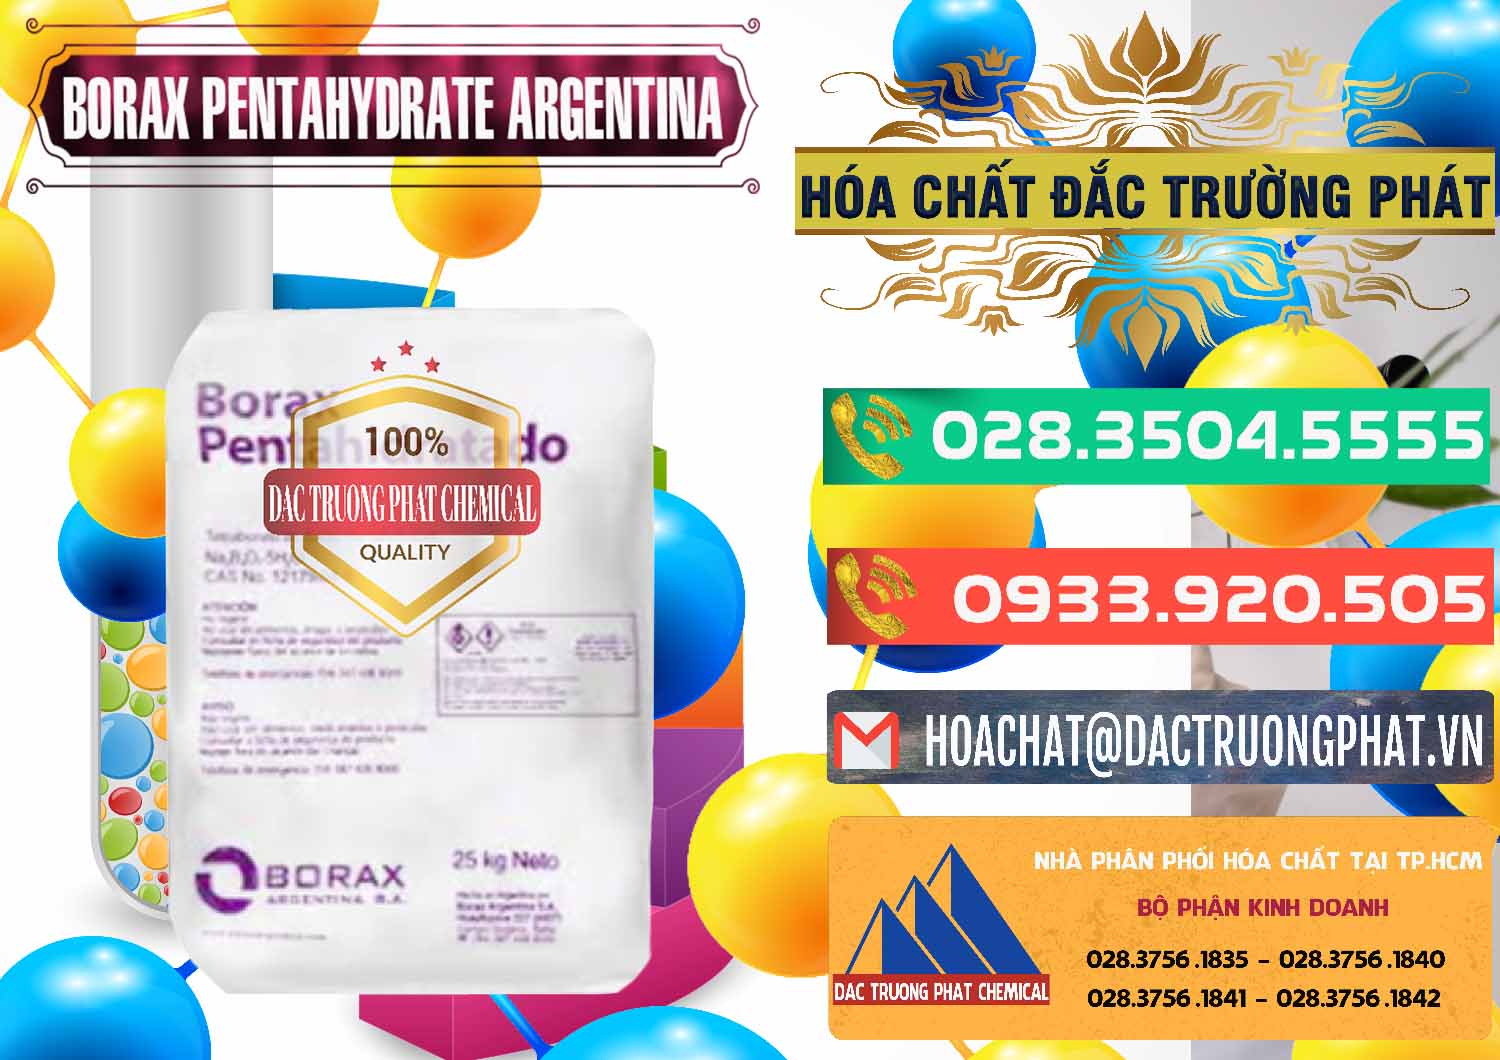 Cty chuyên phân phối và bán Borax Pentahydrate Argentina - 0447 - Đơn vị phân phối & cung cấp hóa chất tại TP.HCM - congtyhoachat.com.vn